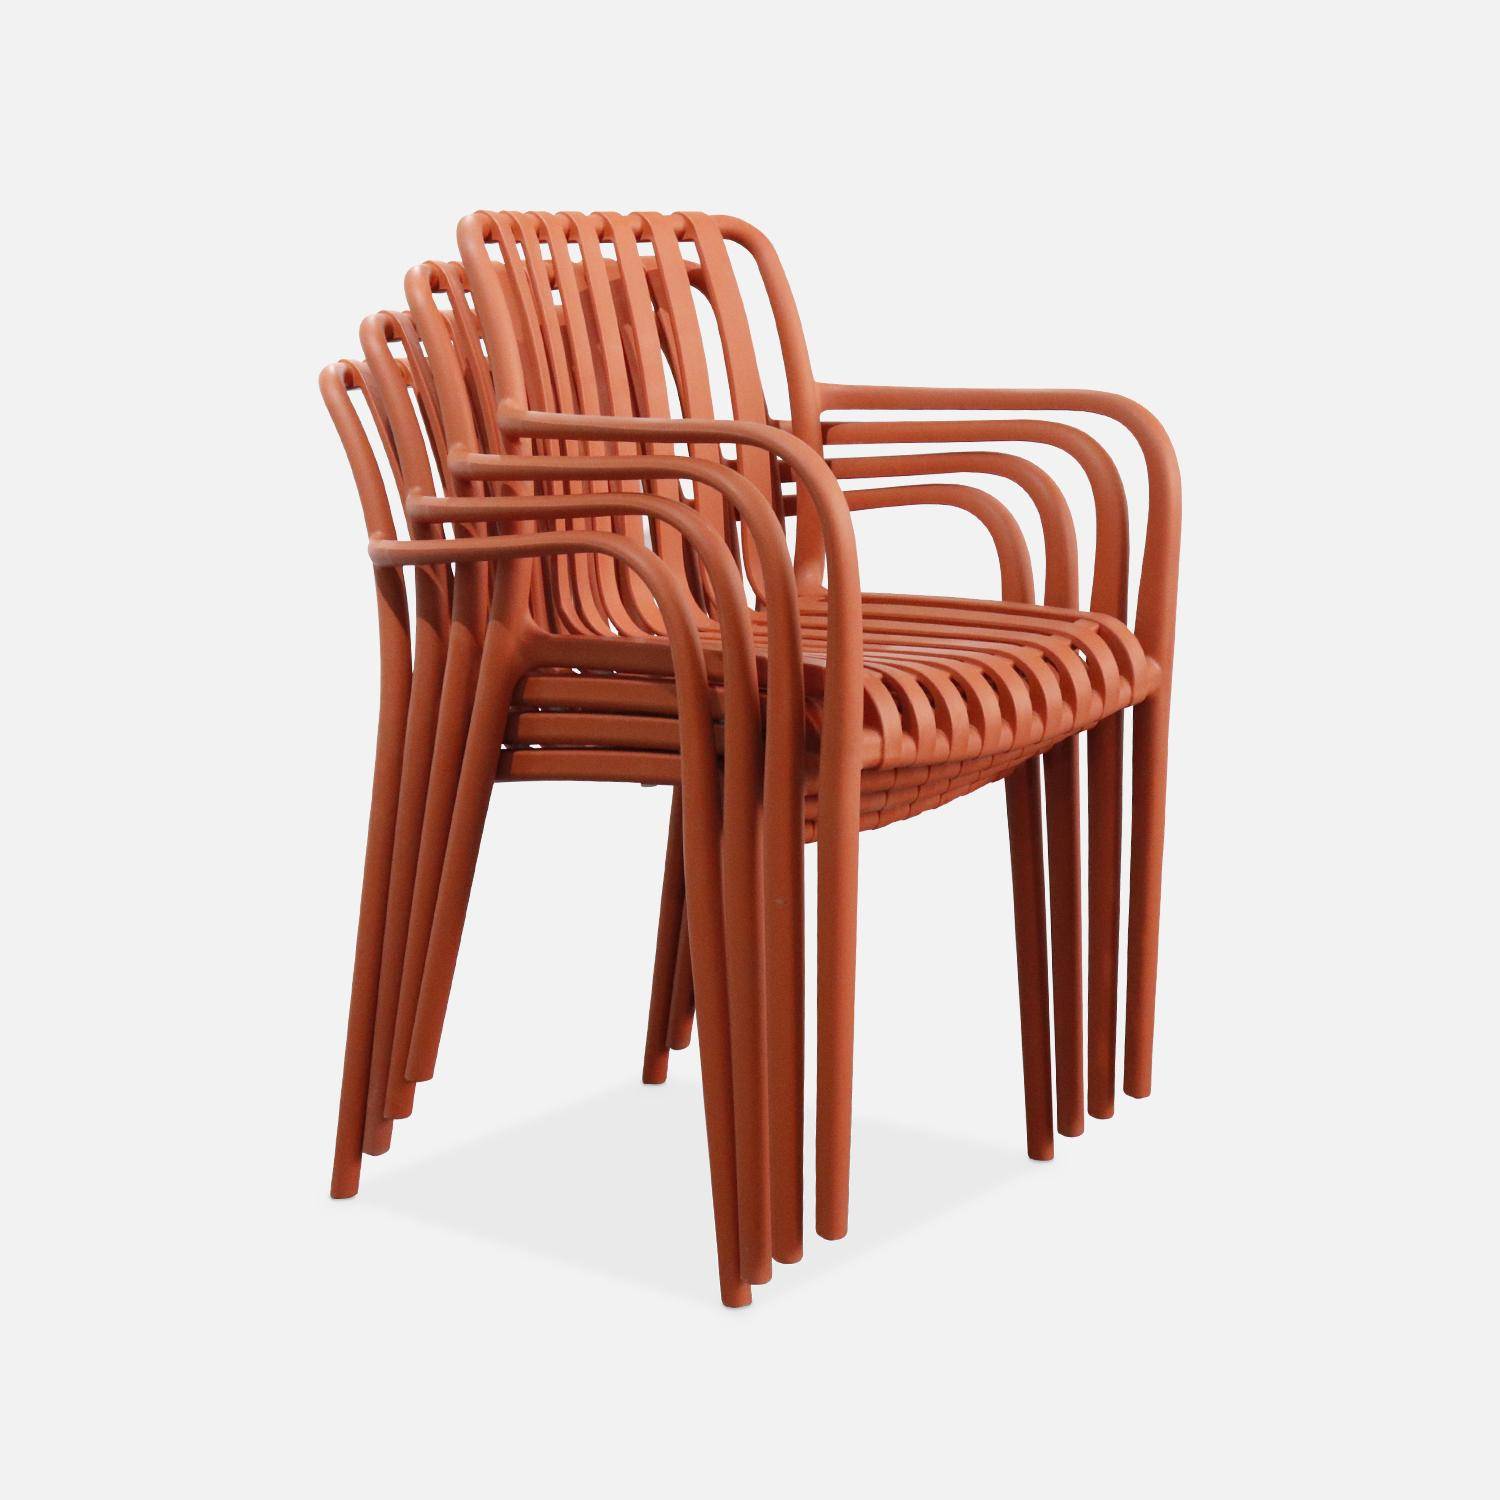 Lot de 4 fauteuils de jardin en plastique terracotta, empilables, design linéaire  Photo3